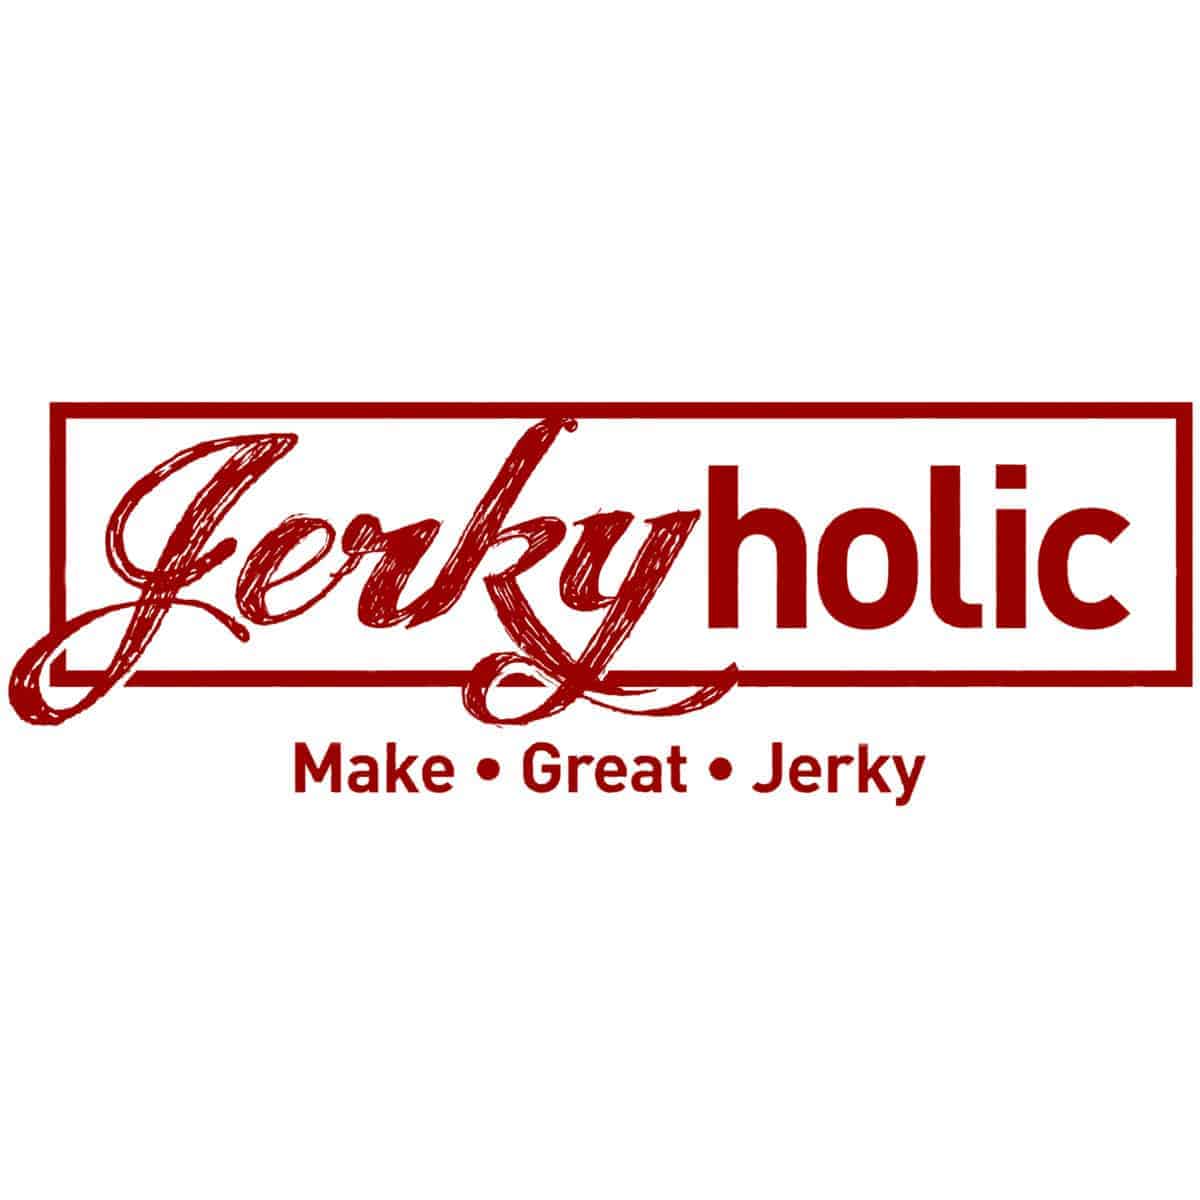 www.jerkyholic.com